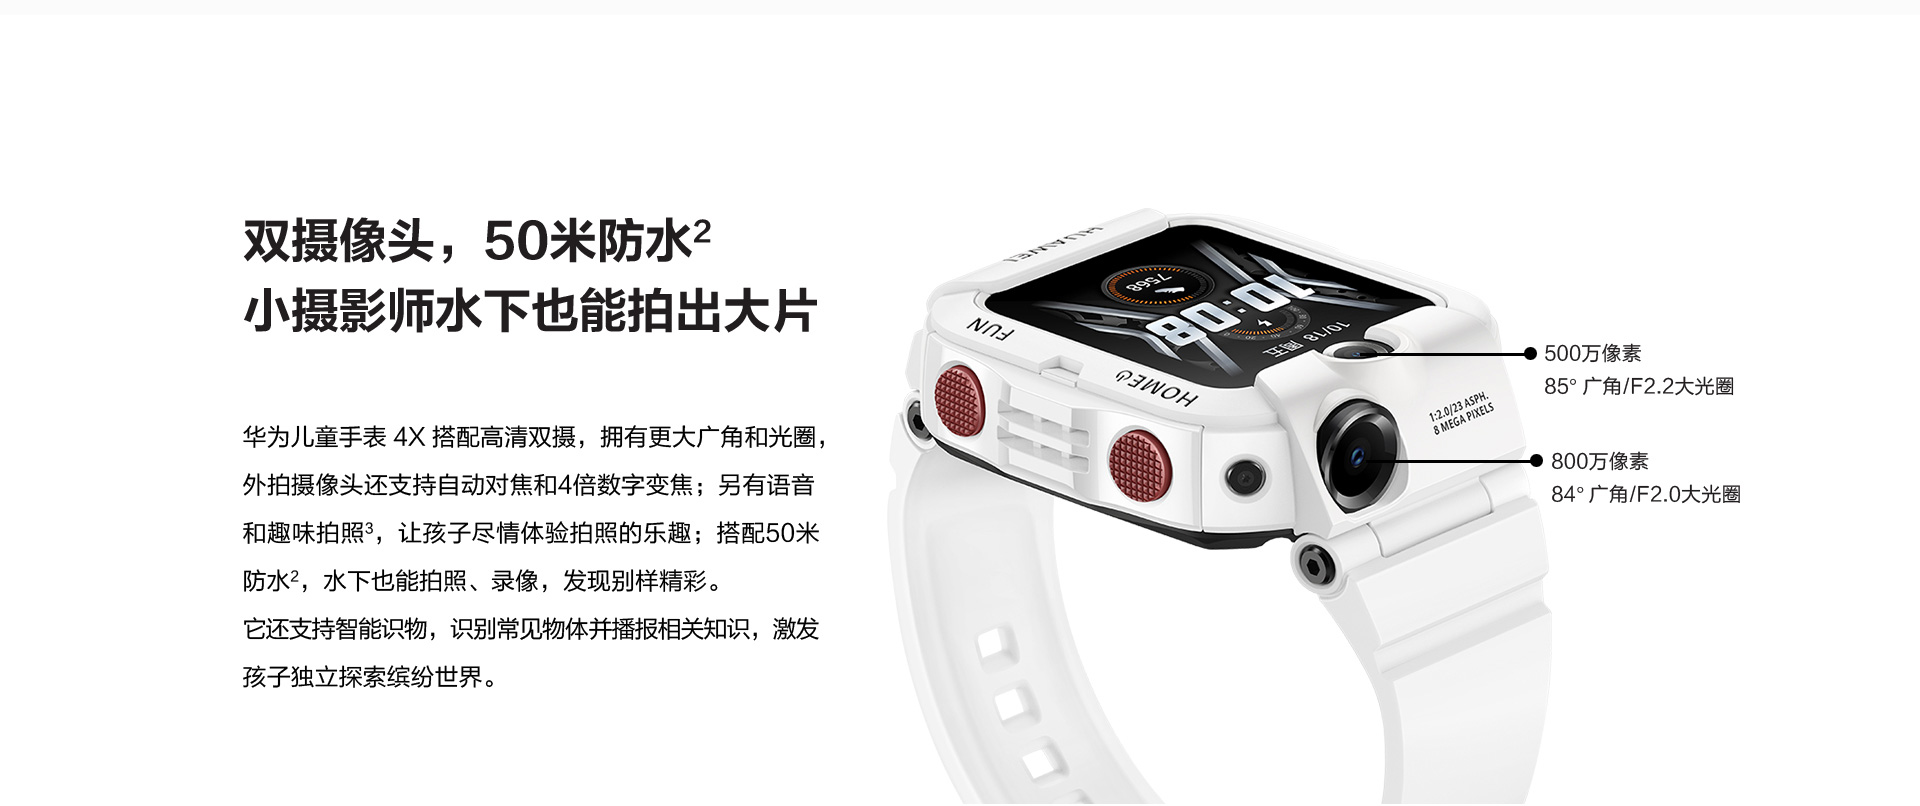 1398元起华为公司儿童智能手表4C 公布预购